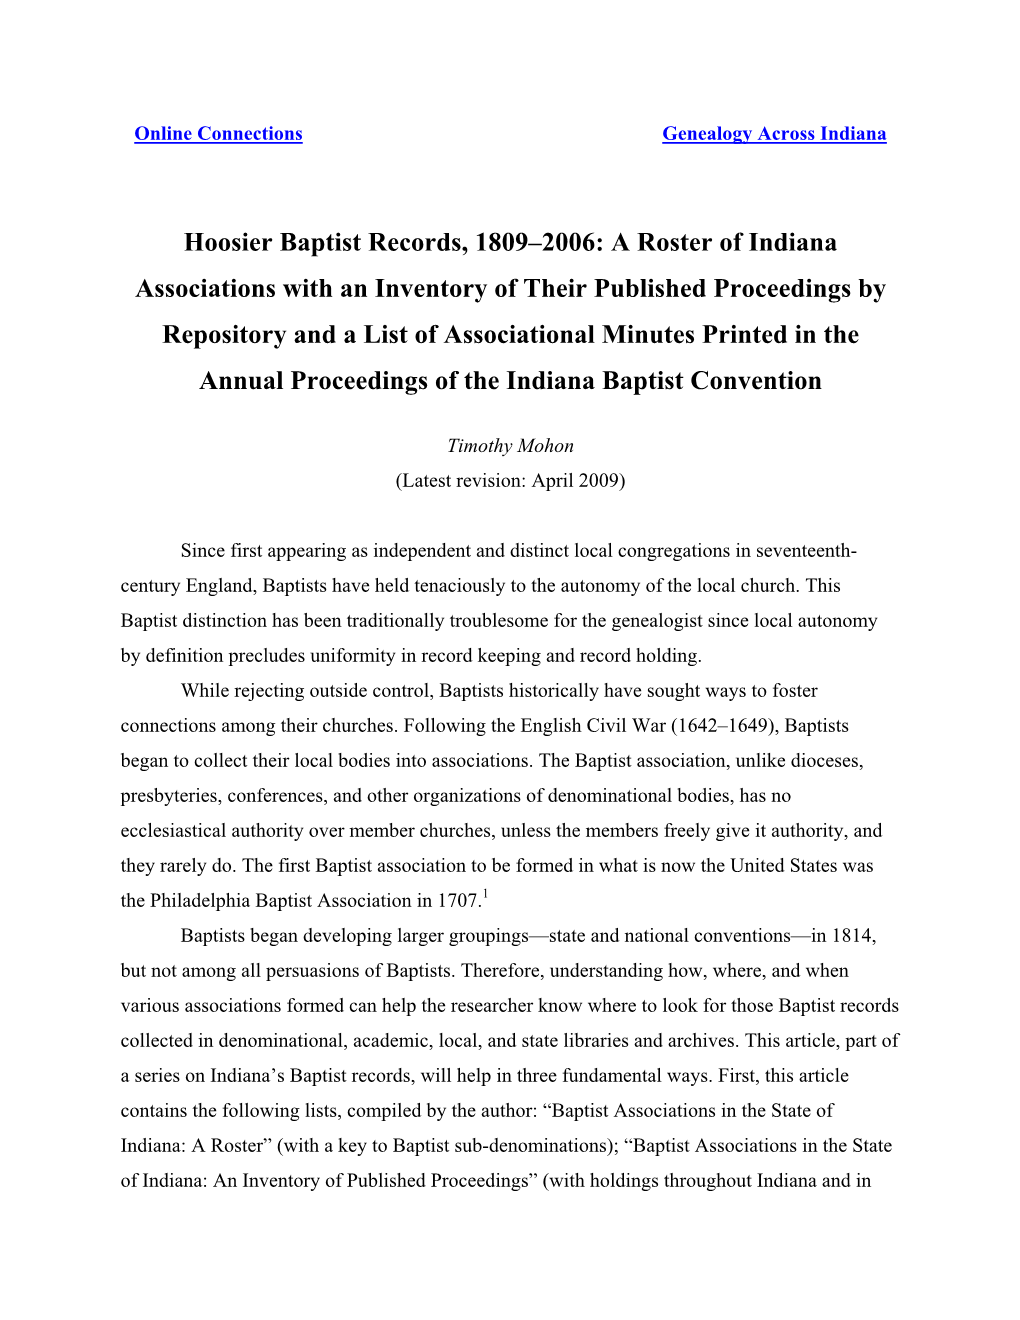 Hoosier Baptist Records, 1809-2006